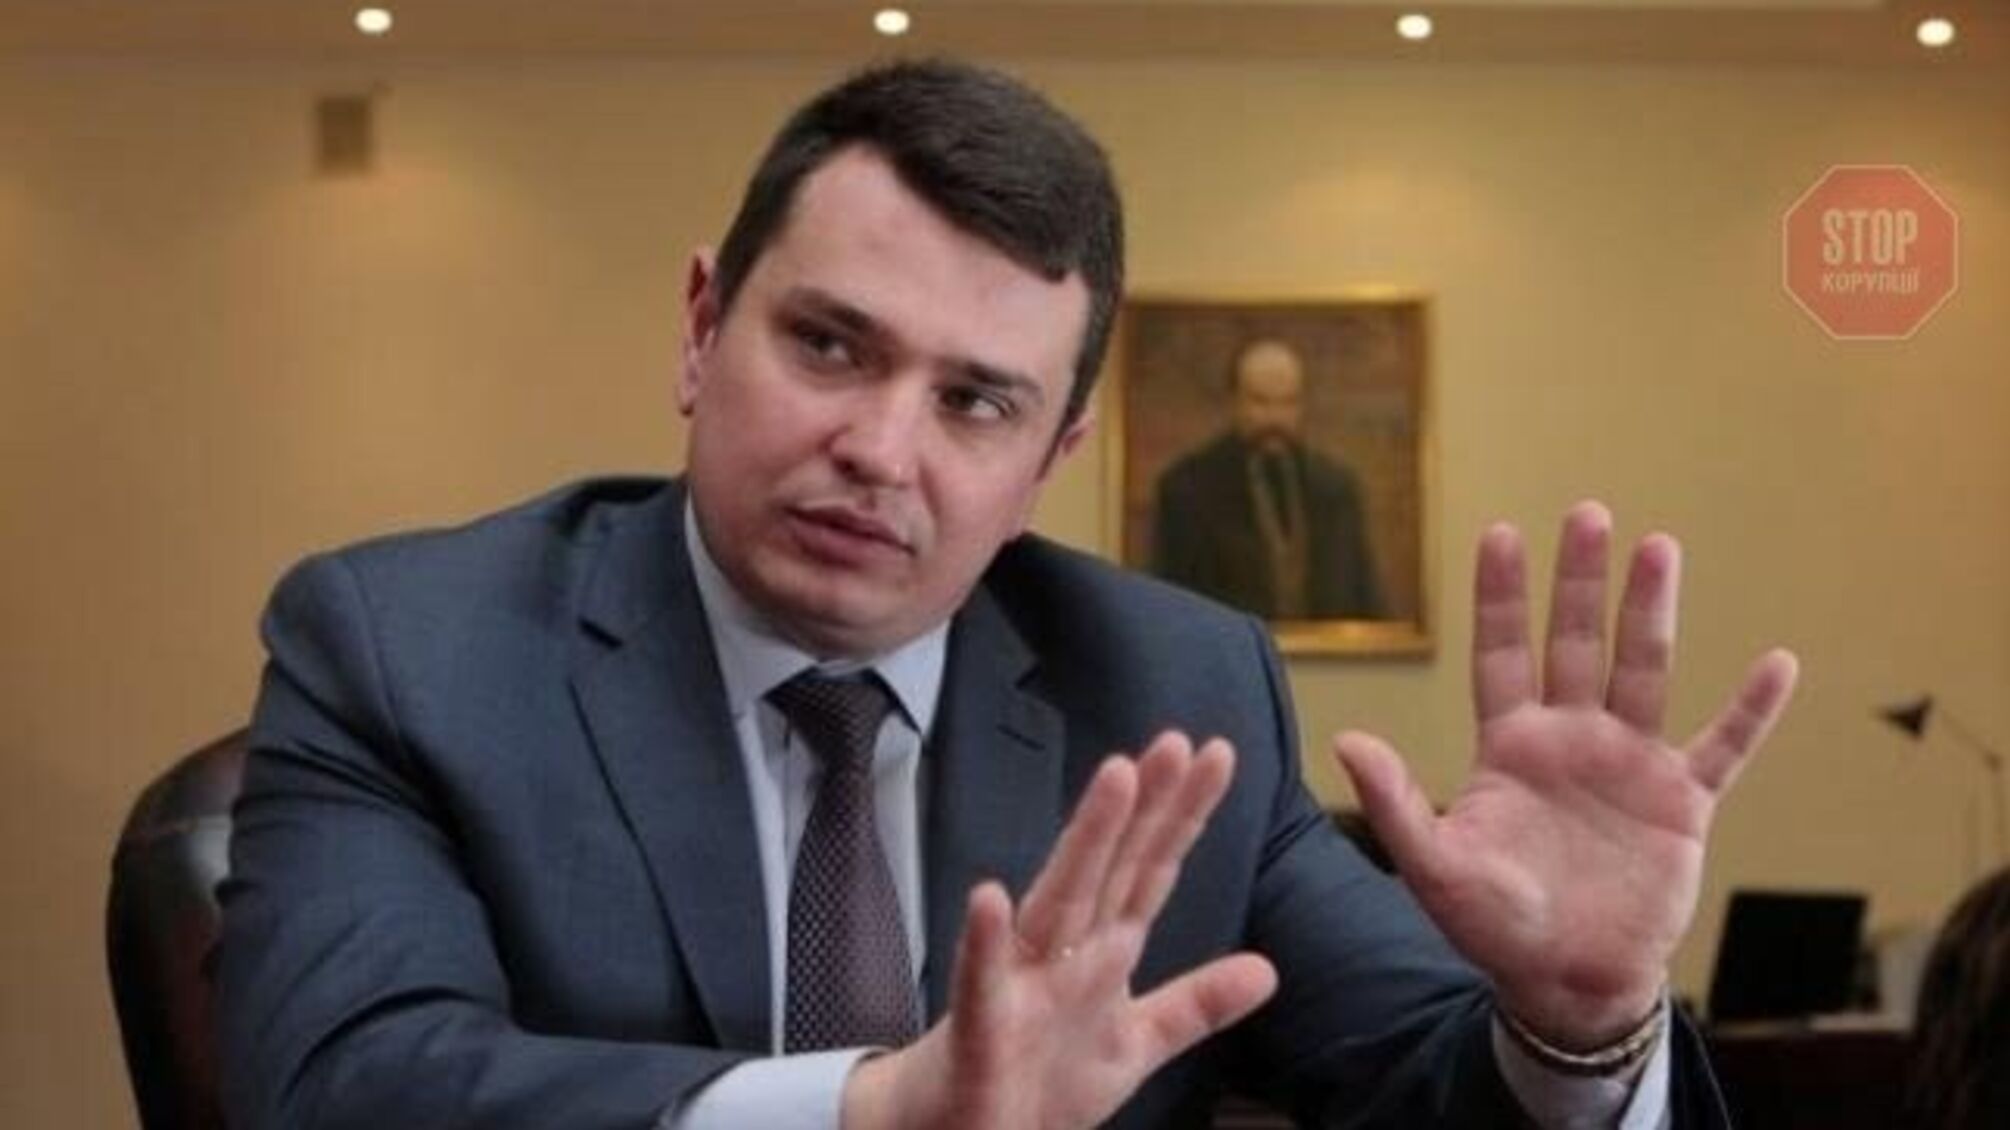 Сытник: 'Мы зафиксировали след украинской коррупции в около 80 странах мира'